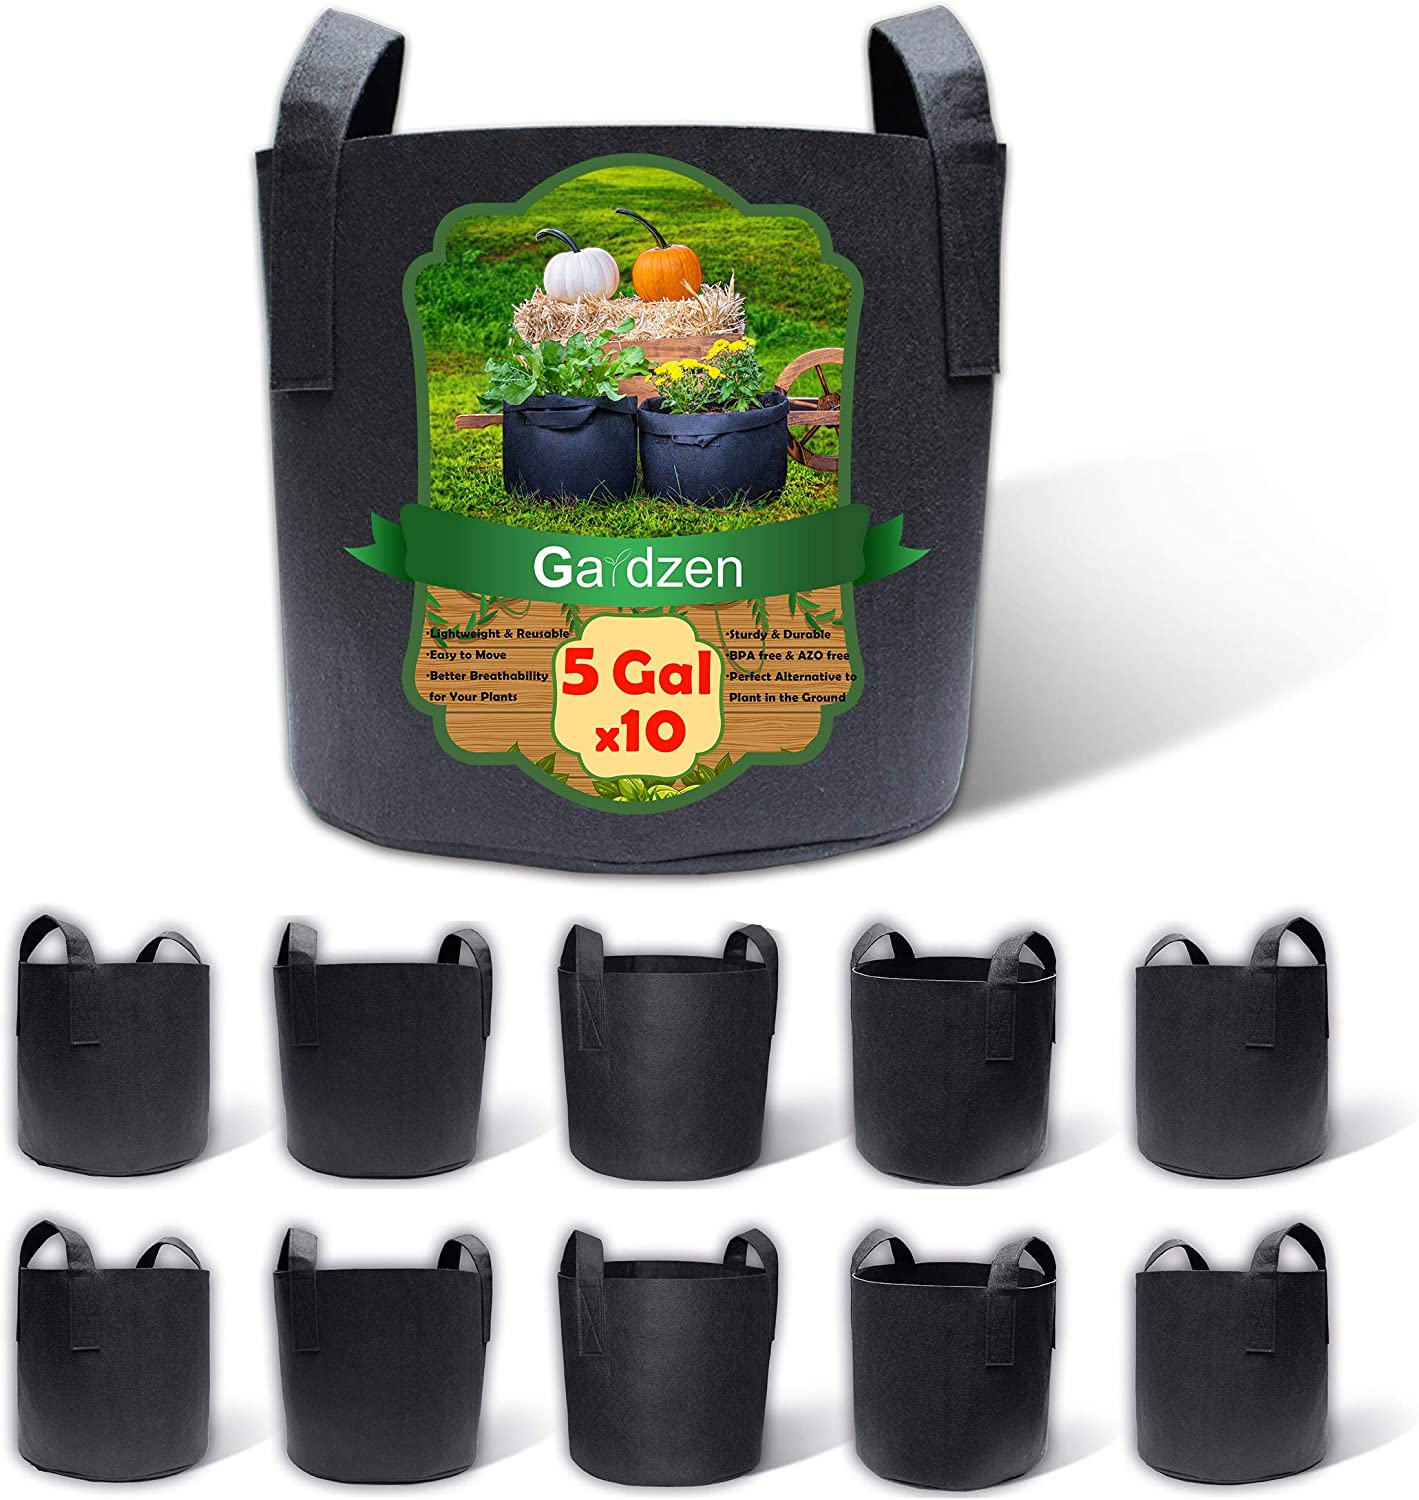 Gardzen Lightweight Reusable Grow Bags, 10-Pack